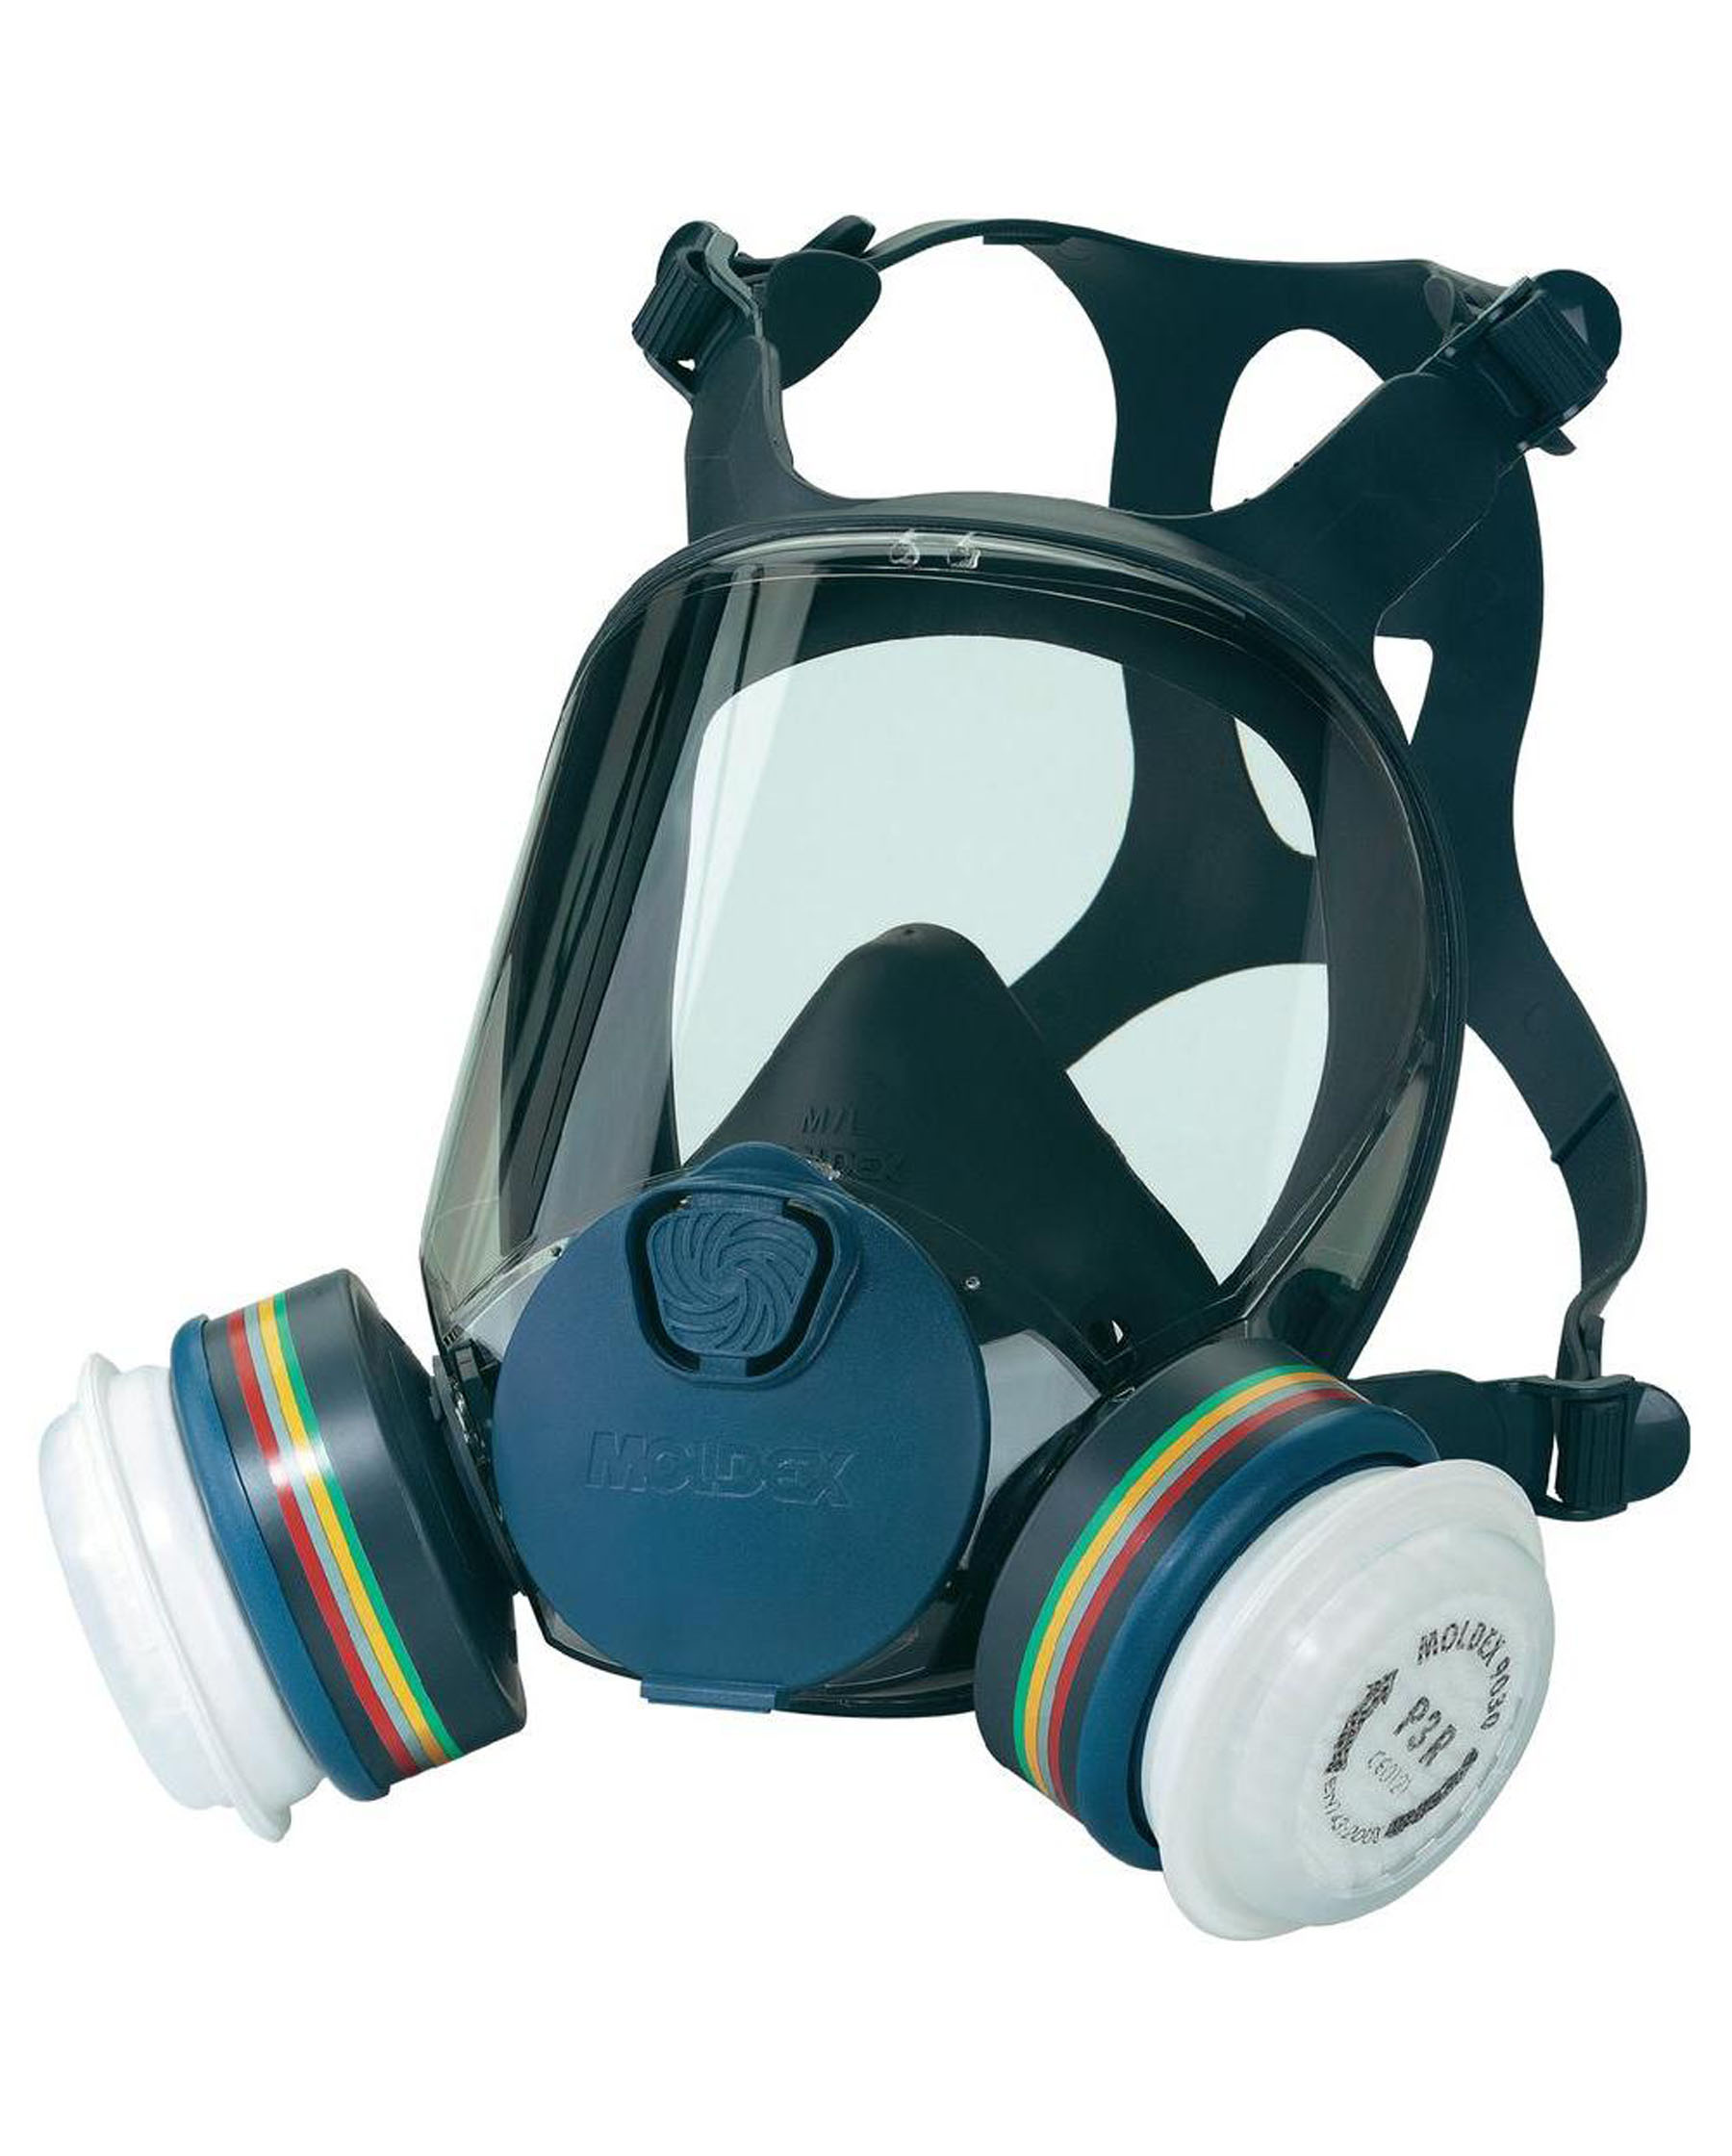 Moldex 9000 Series Full Face Respirator Dust And Gas Mask Medsurge 1575